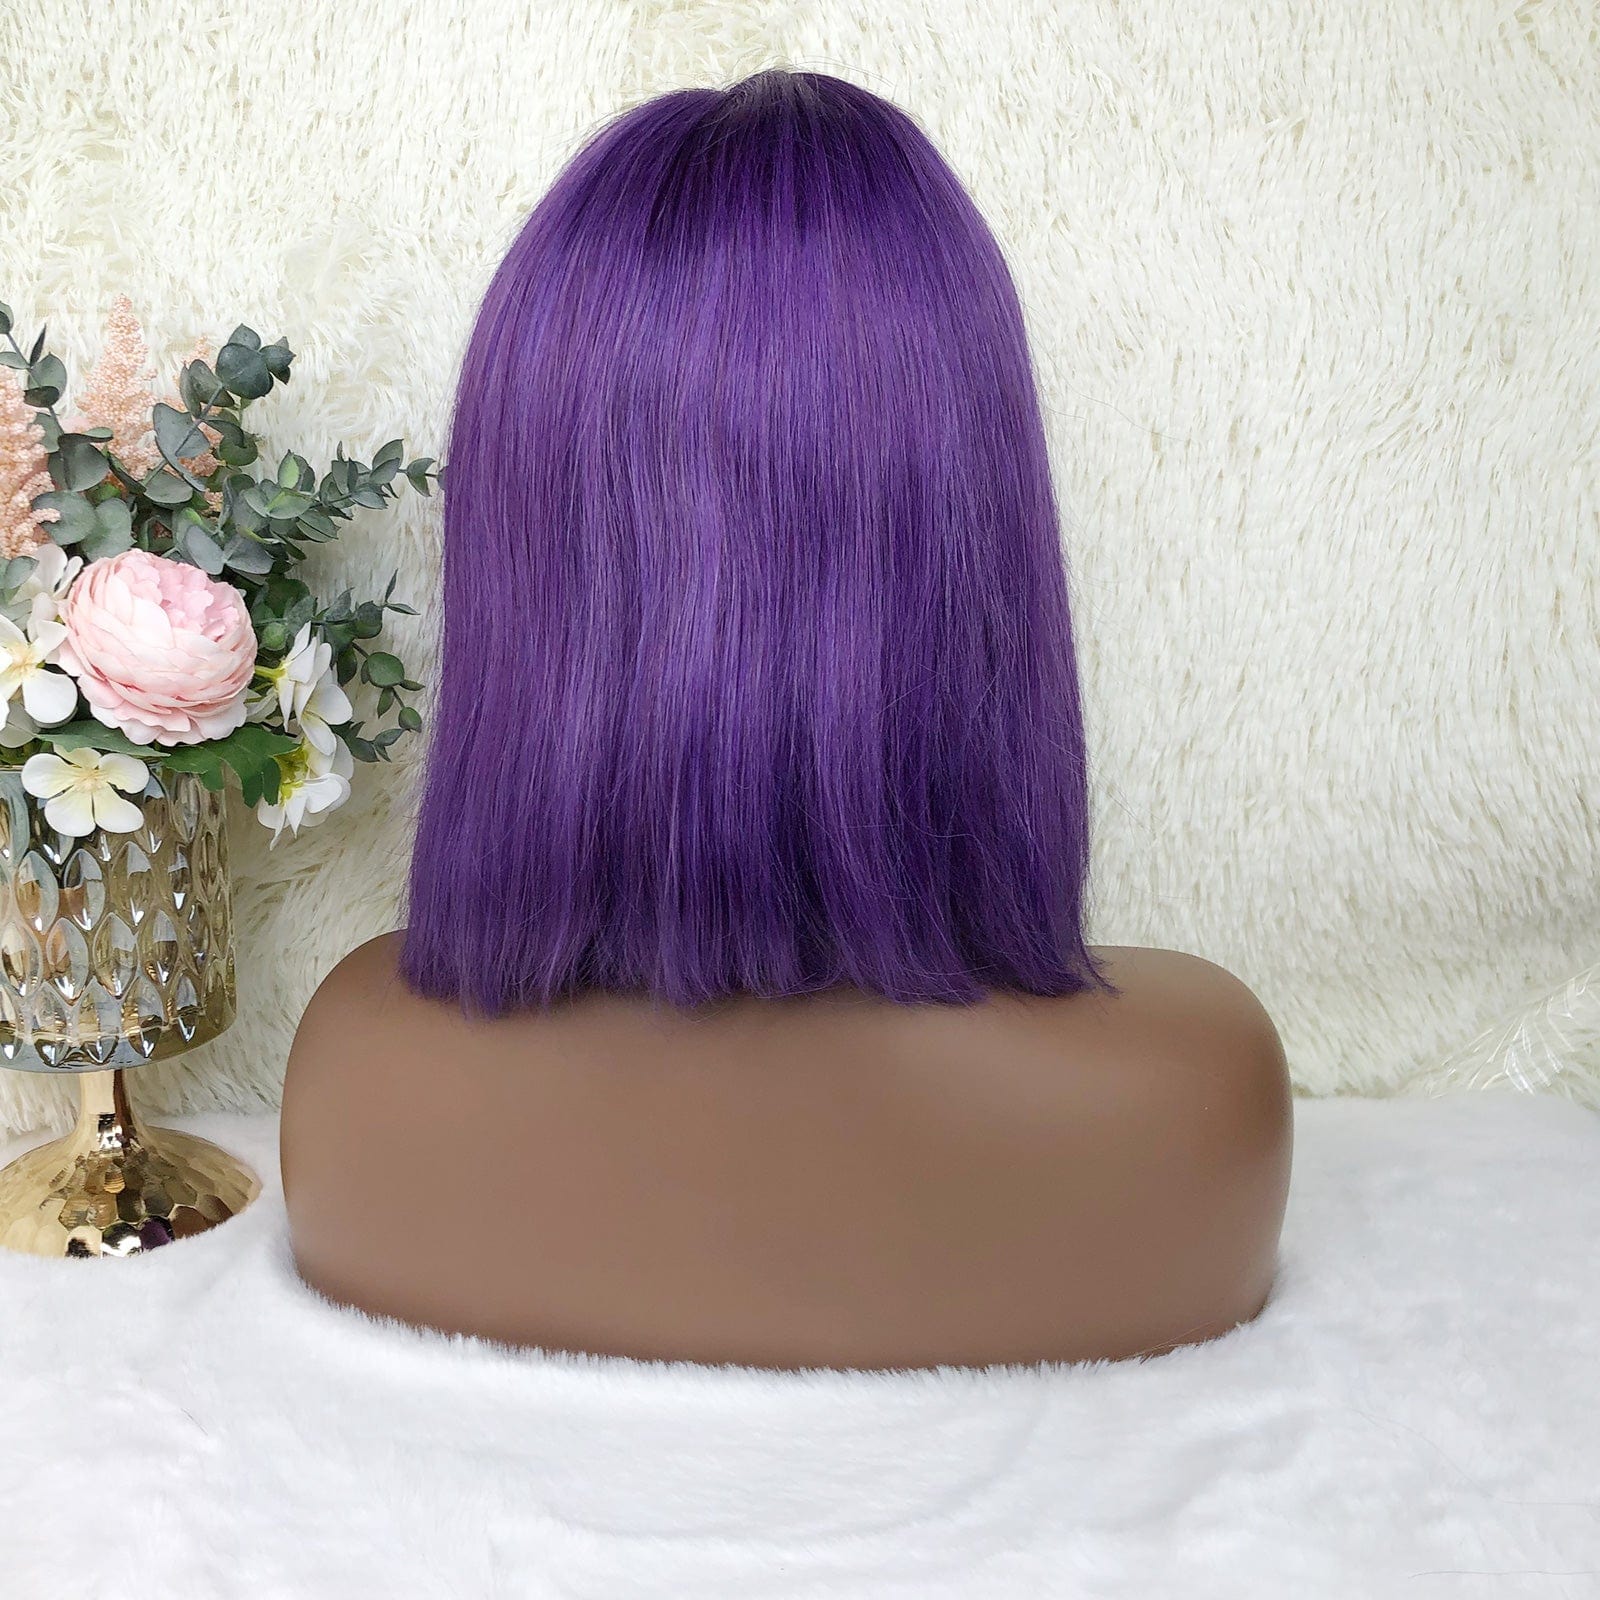 Queen Hair Inc Colored Bob Wig Human Hair Wigs Purple